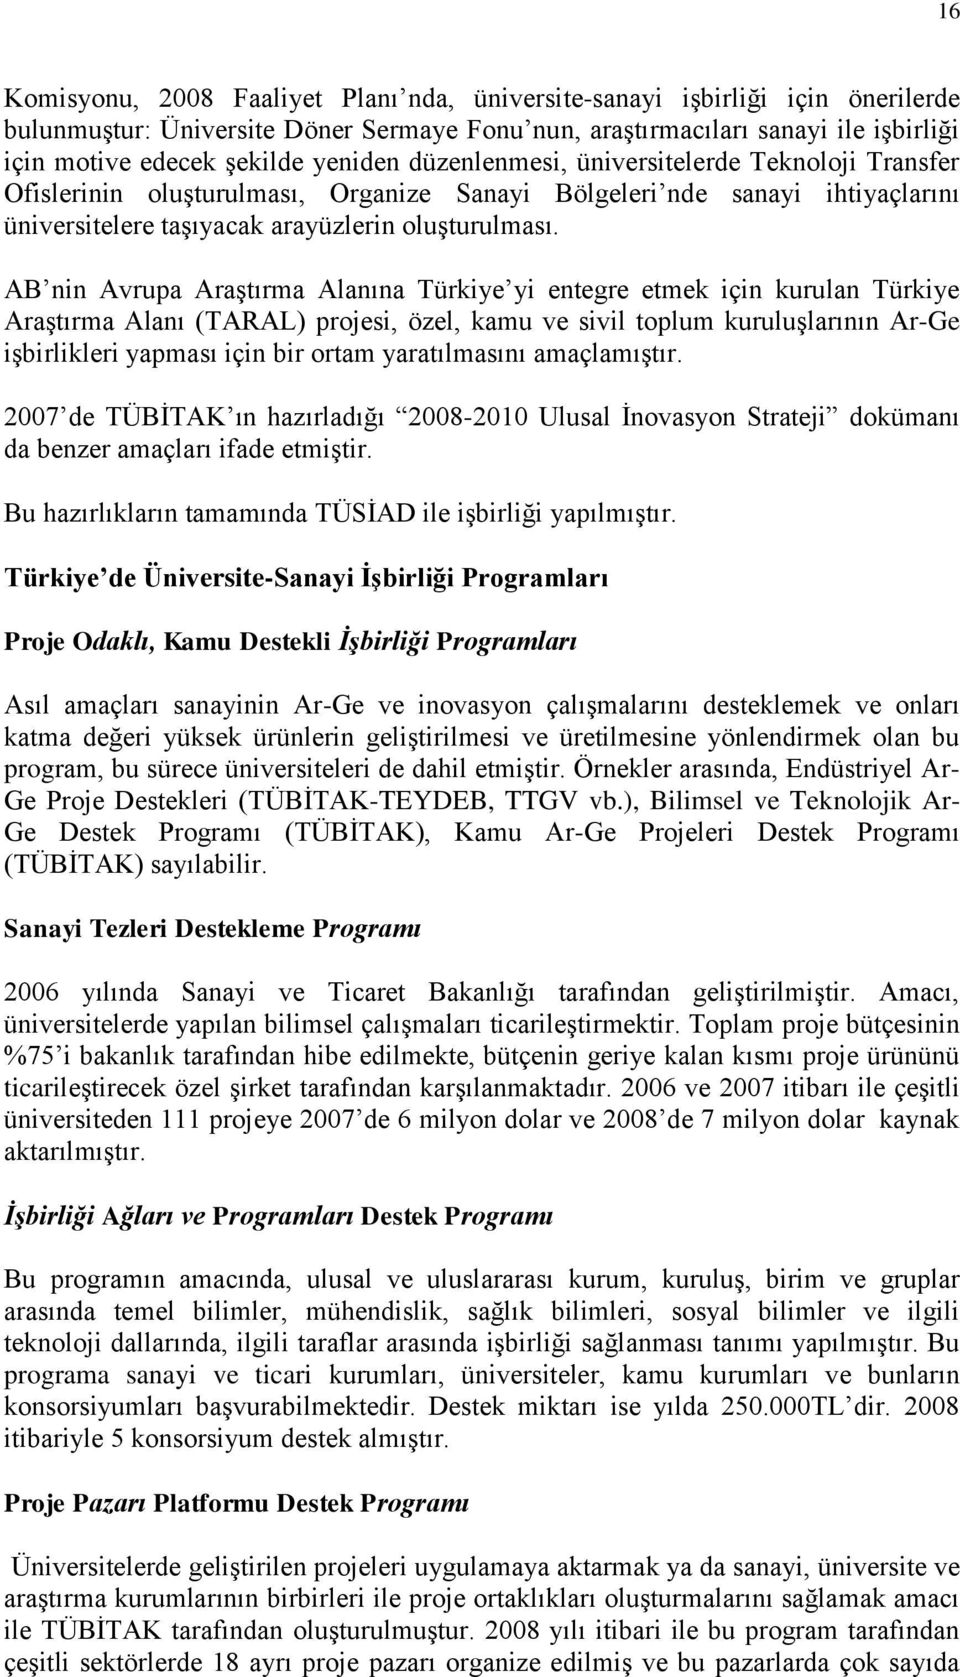 AB nin Avrupa Araştırma Alanına Türkiye yi entegre etmek için kurulan Türkiye Araştırma Alanı (TARAL) projesi, özel, kamu ve sivil toplum kuruluşlarının Ar-Ge işbirlikleri yapması için bir ortam